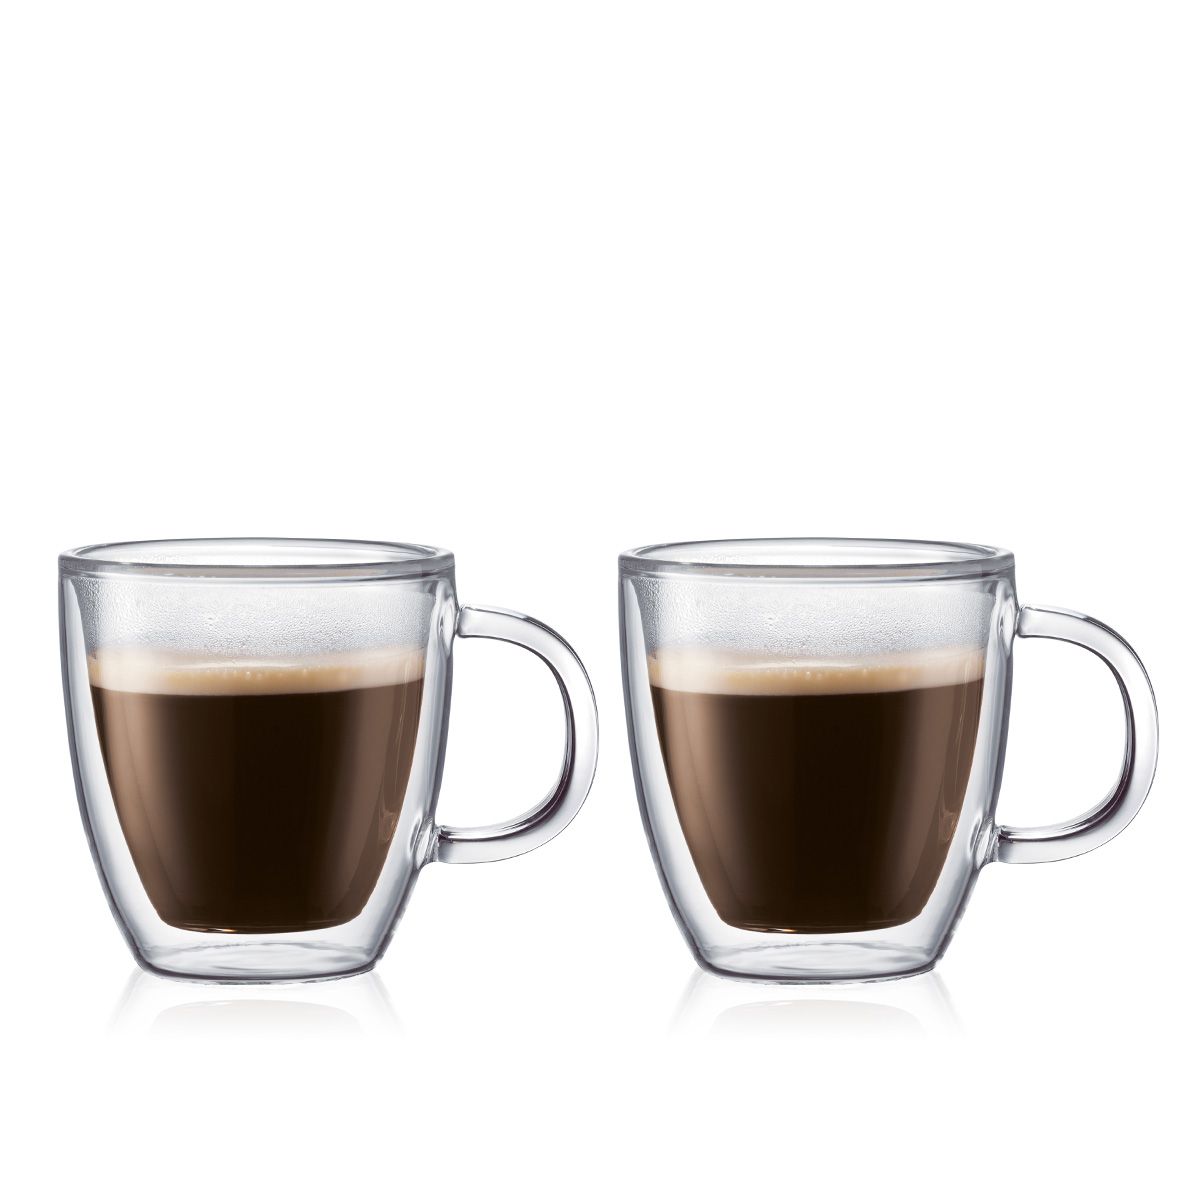 Is aan het huilen Justitie Intact BODUM® - Espresso Cup BISTRO - 2 Pieces Set 0.45 L